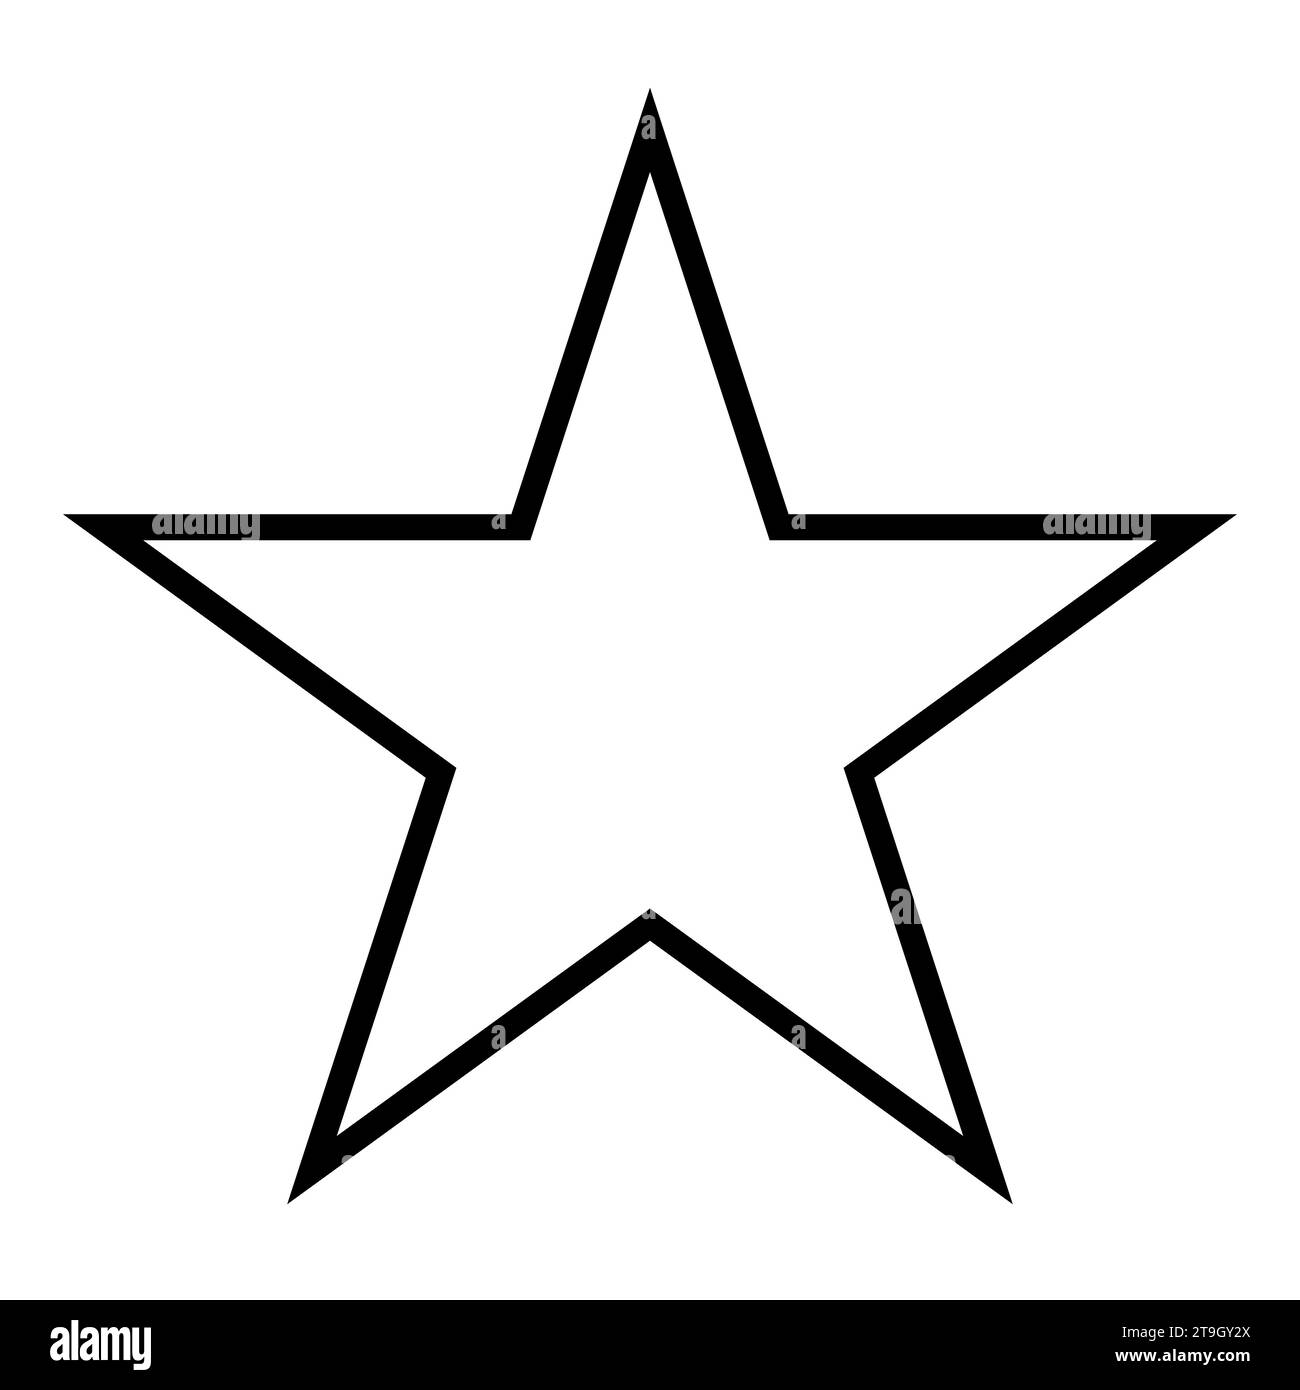 simbolo a forma di stella, silhouette vettoriale in bianco e nero raffigurante una semplice stella a cinque punte Illustrazione Vettoriale